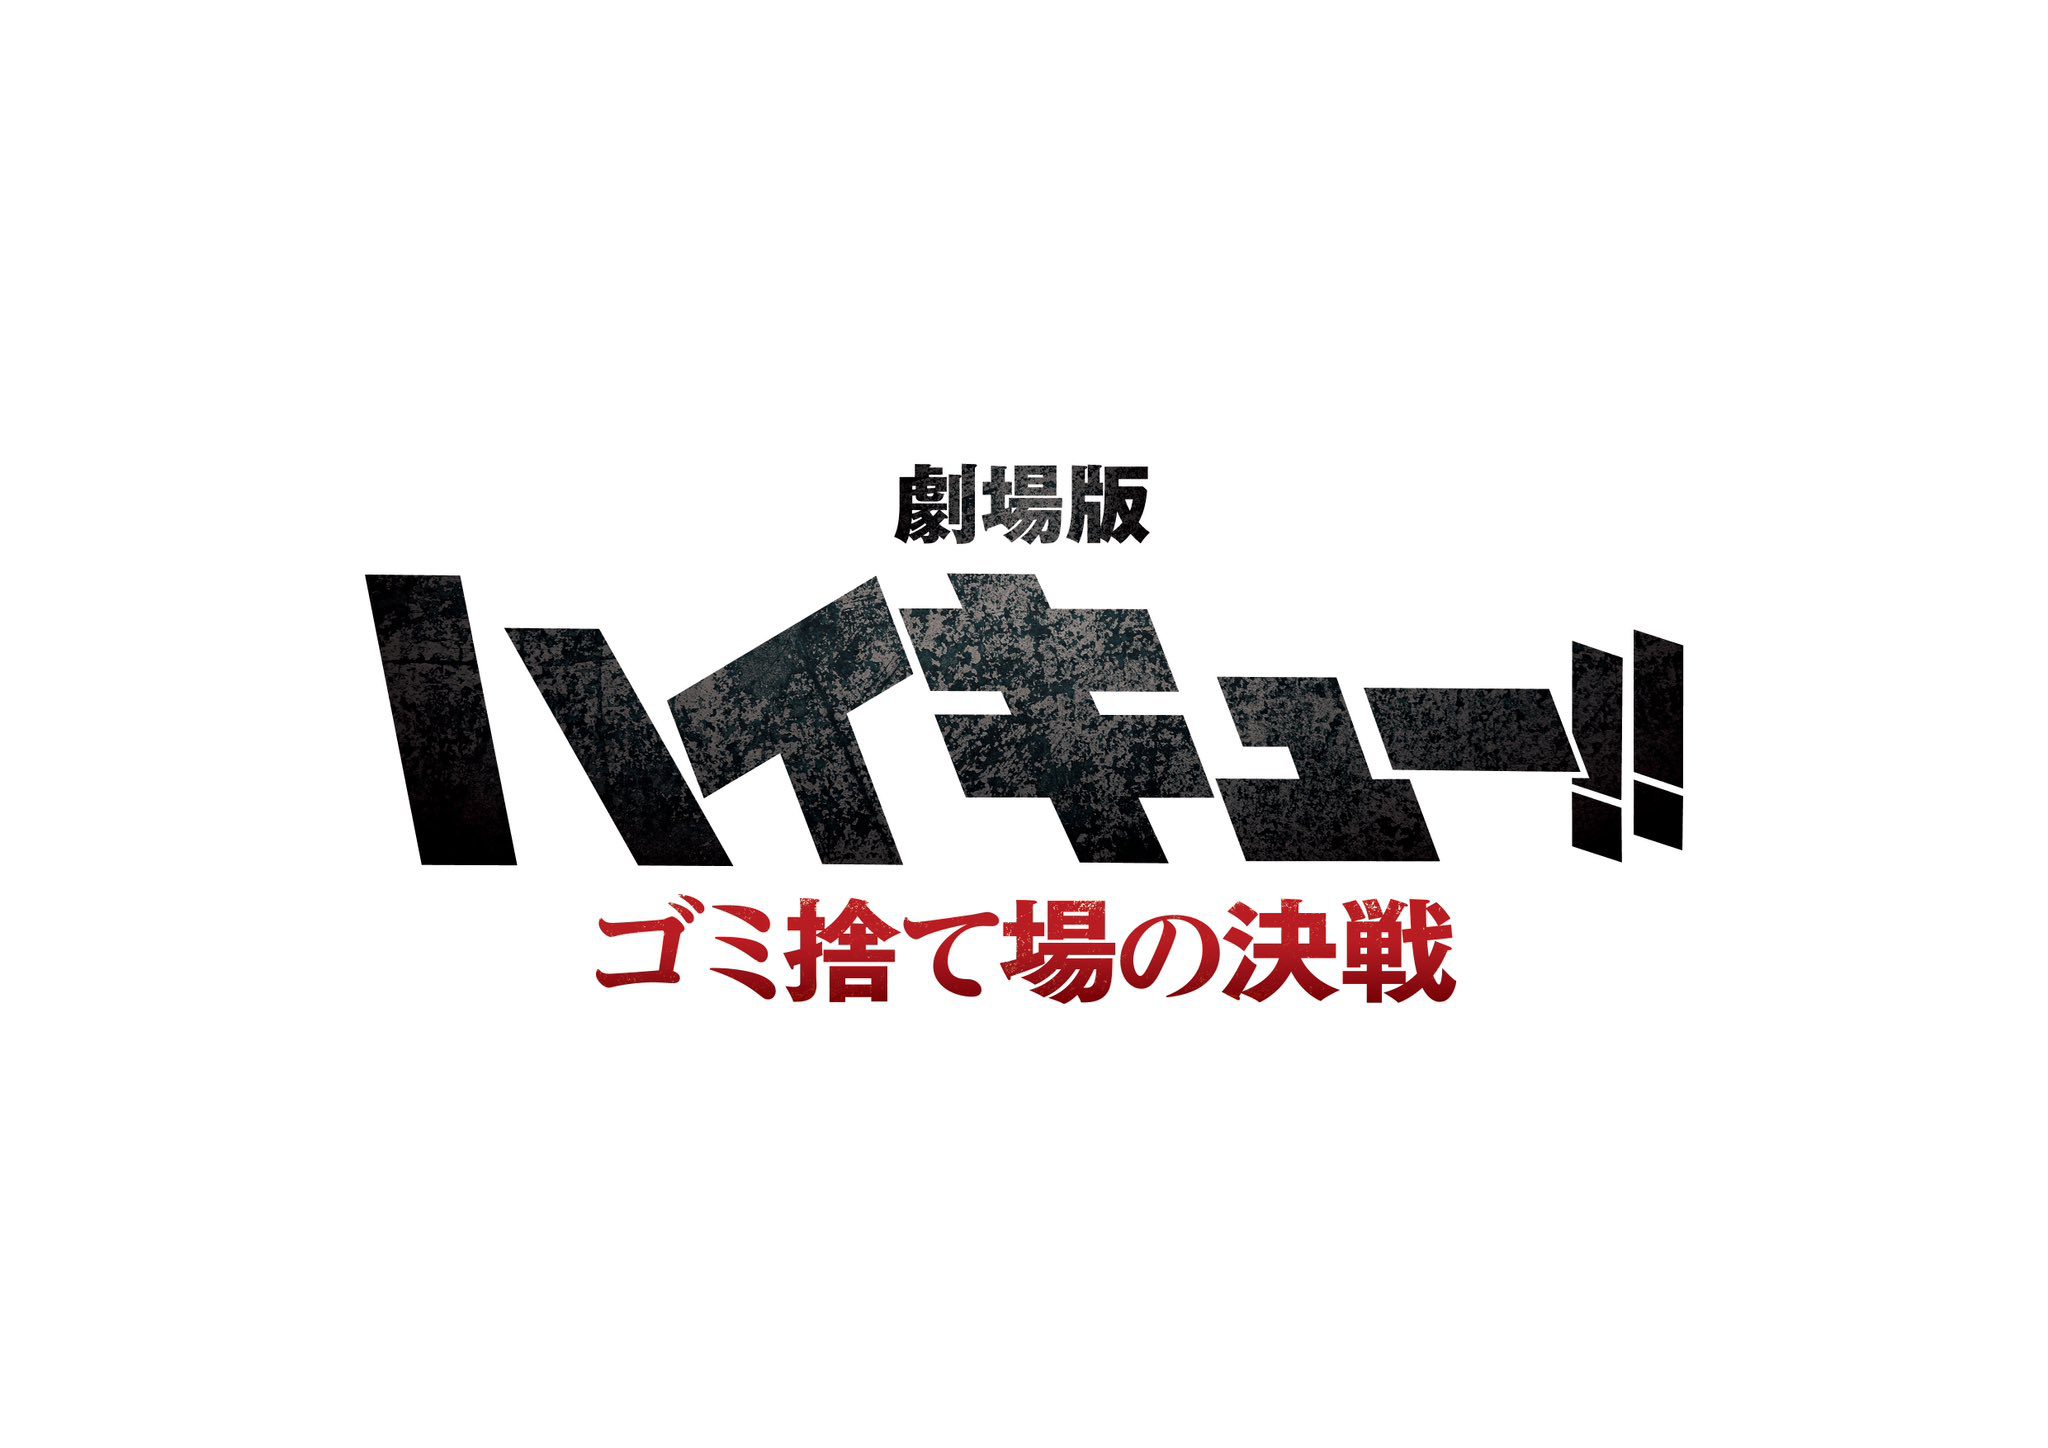 Haikyu!!: filme final ganha trailer e revela novidades - Game Arena